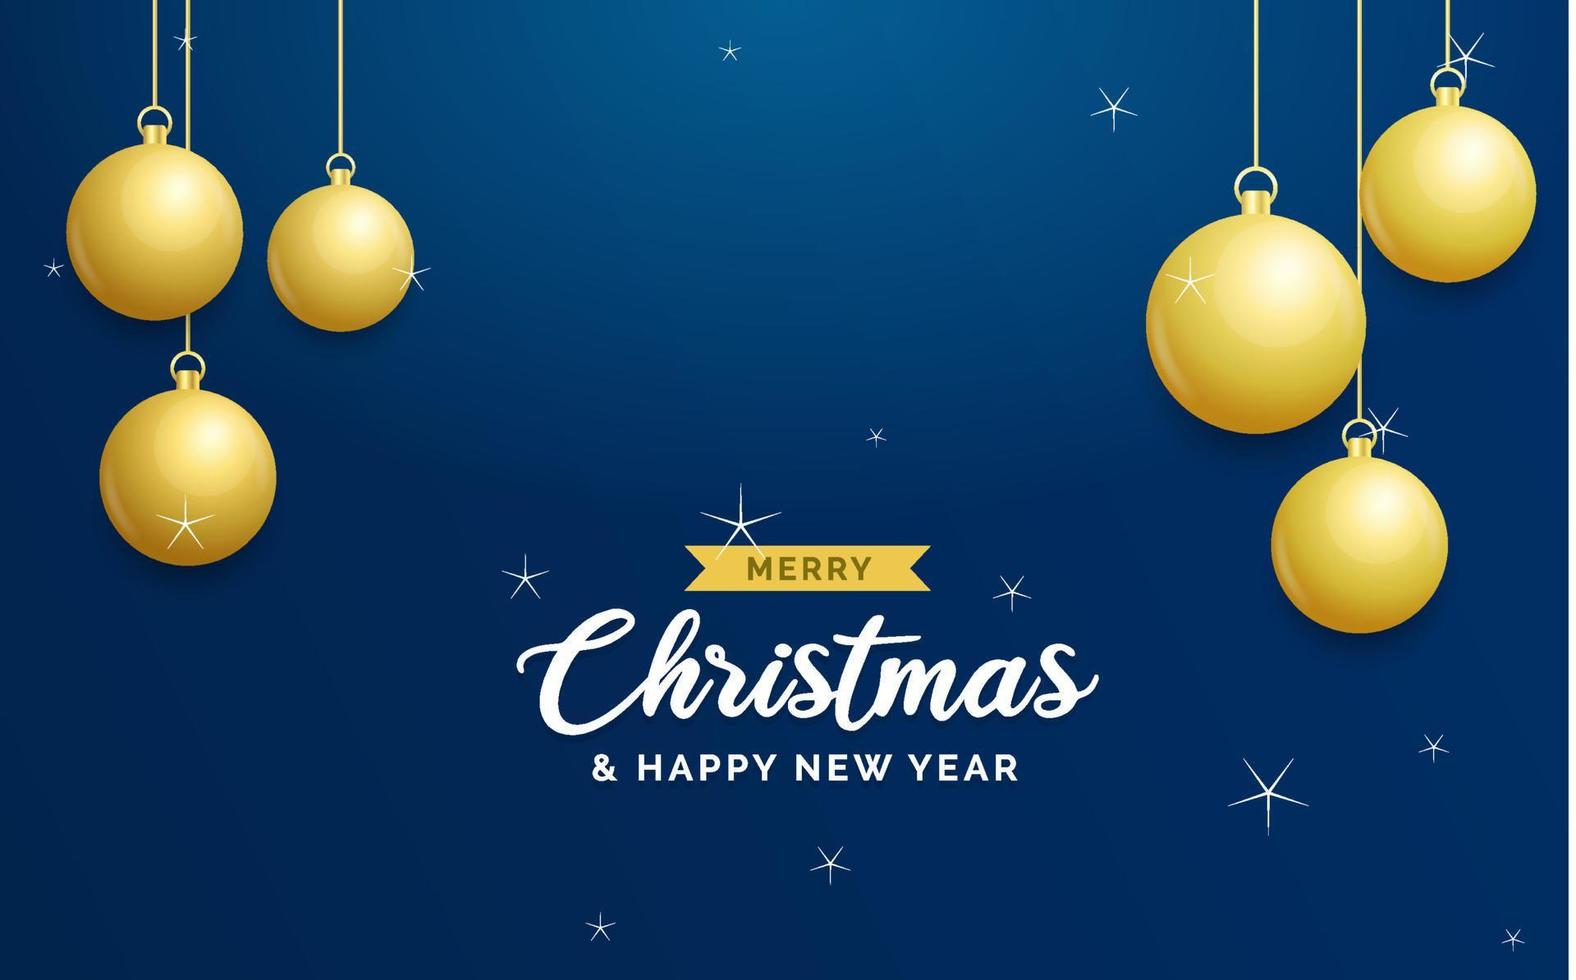 weihnachtsblauer hintergrund mit hängenden glänzenden goldenen kugeln. frohe weihnachten grußkarte. Feiertagsweihnachts- und Neujahrsplakat. Web-Banner vektor